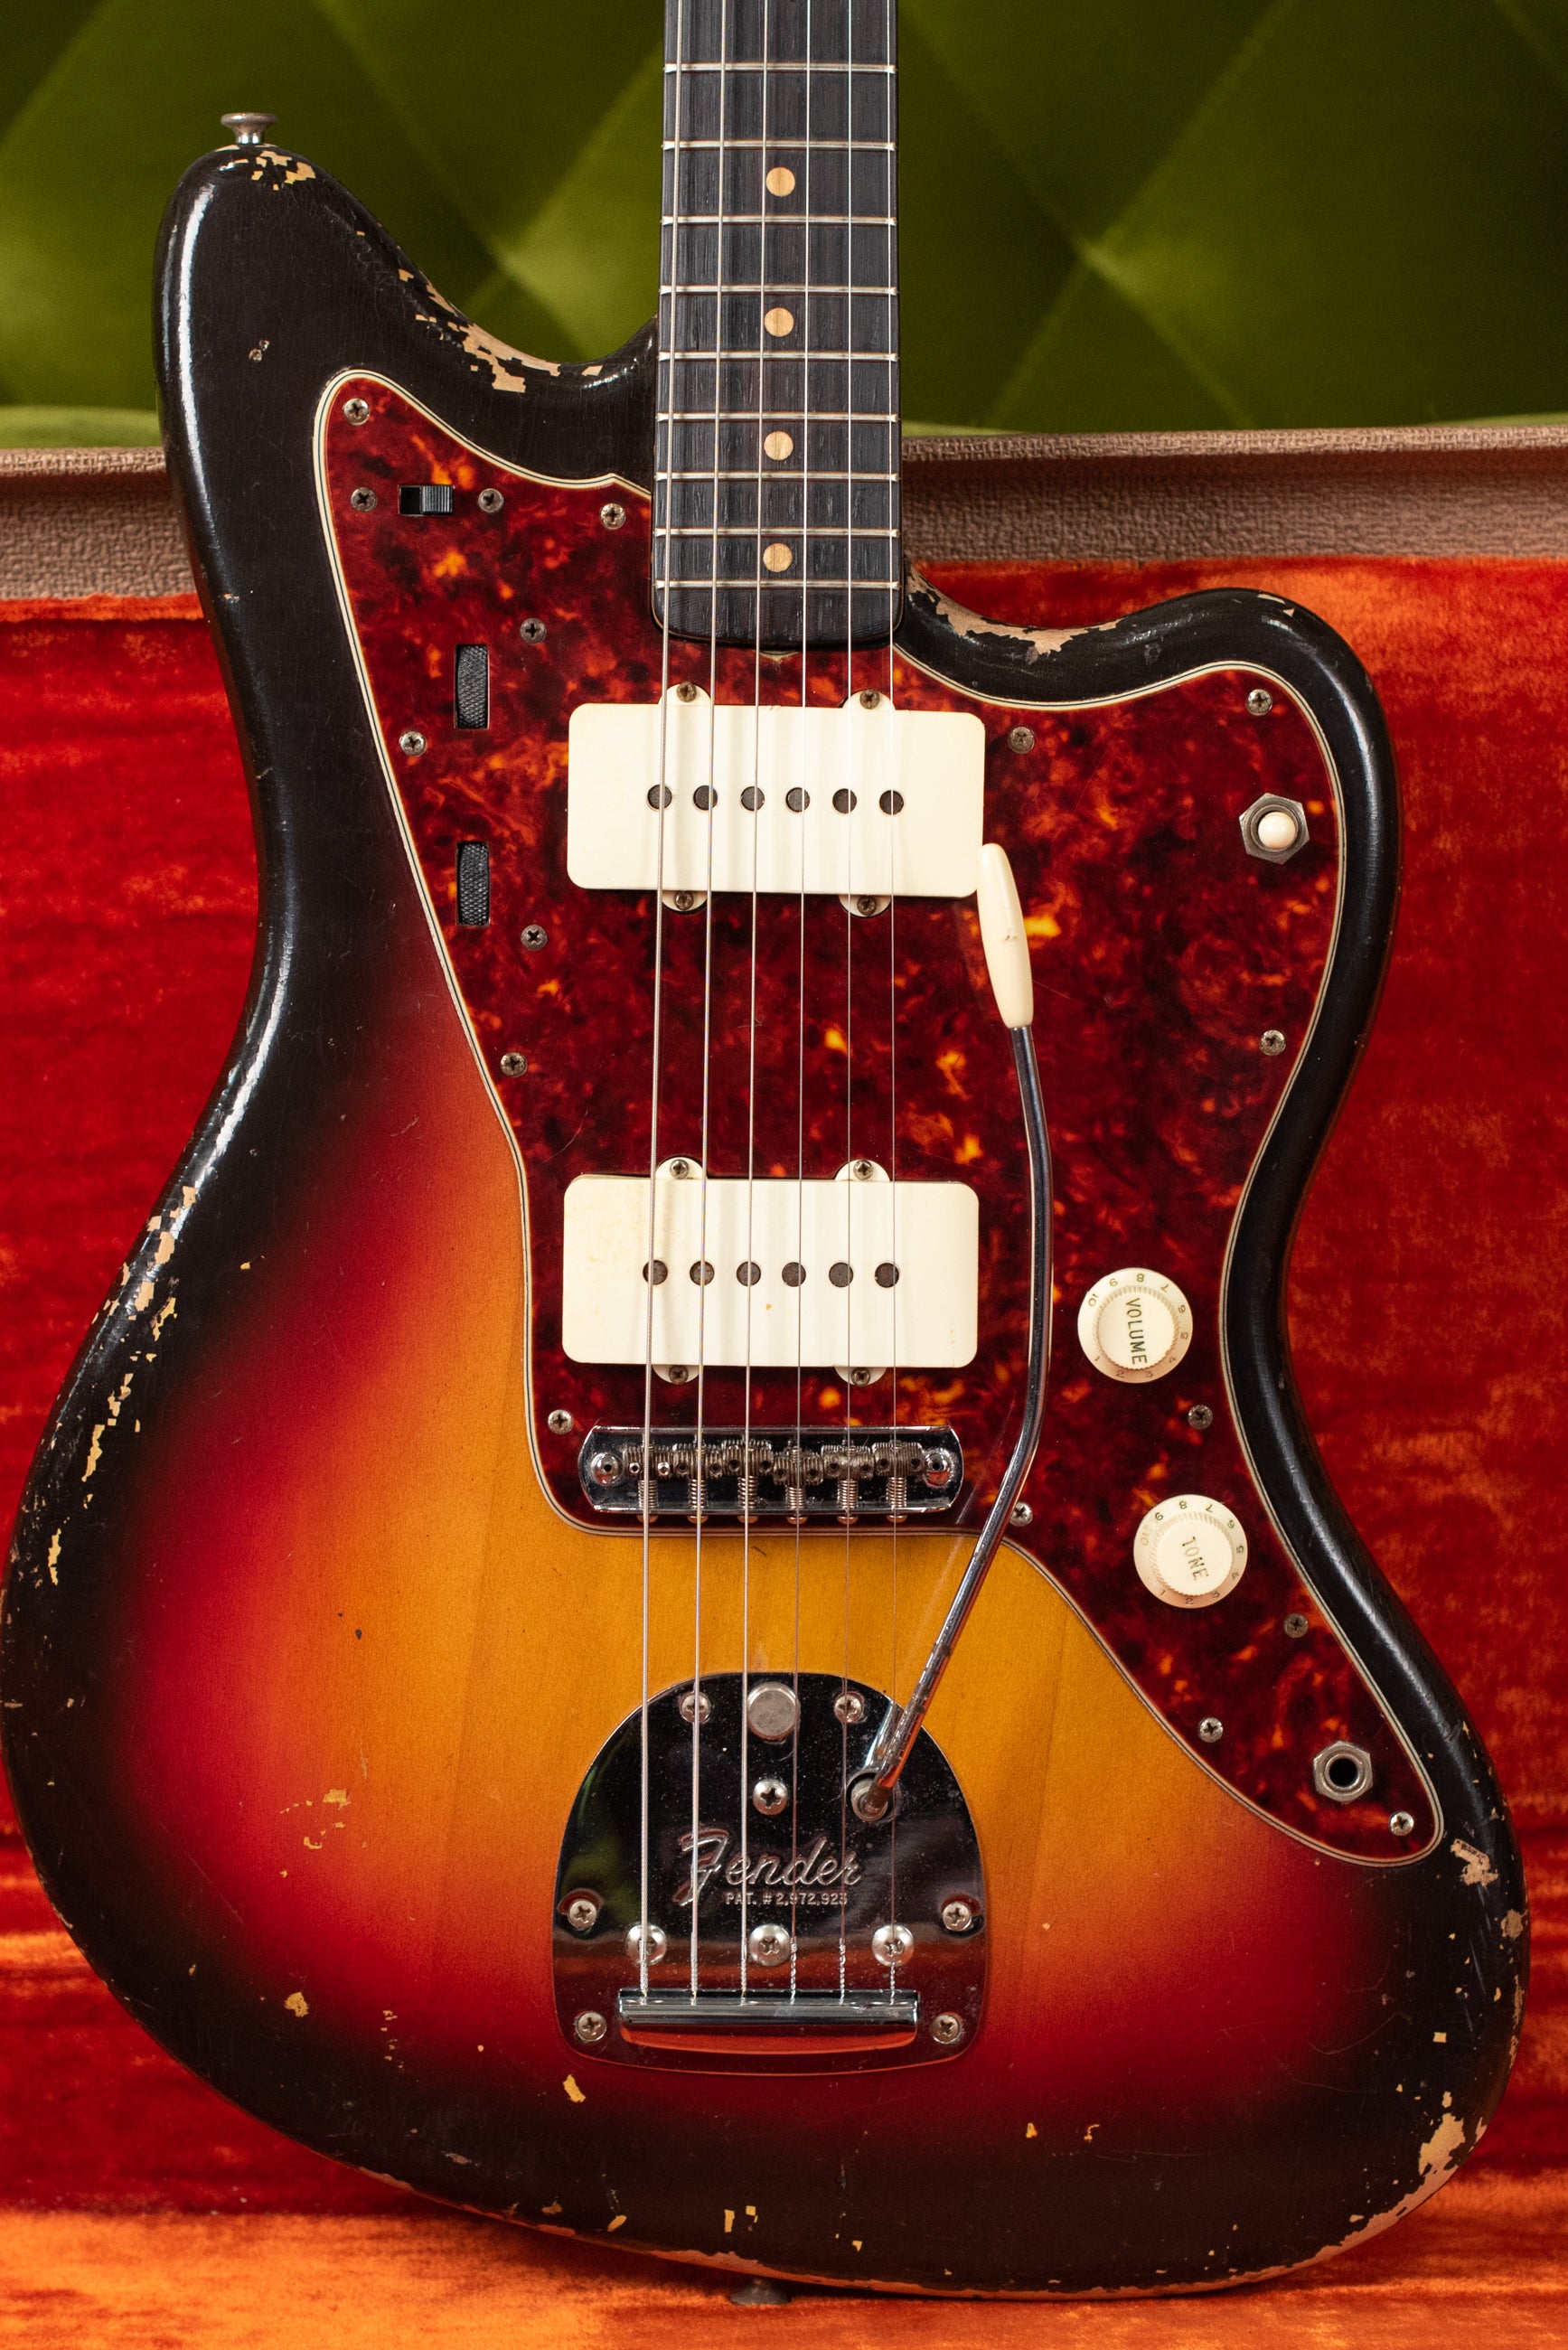 Vintage Fender guitar